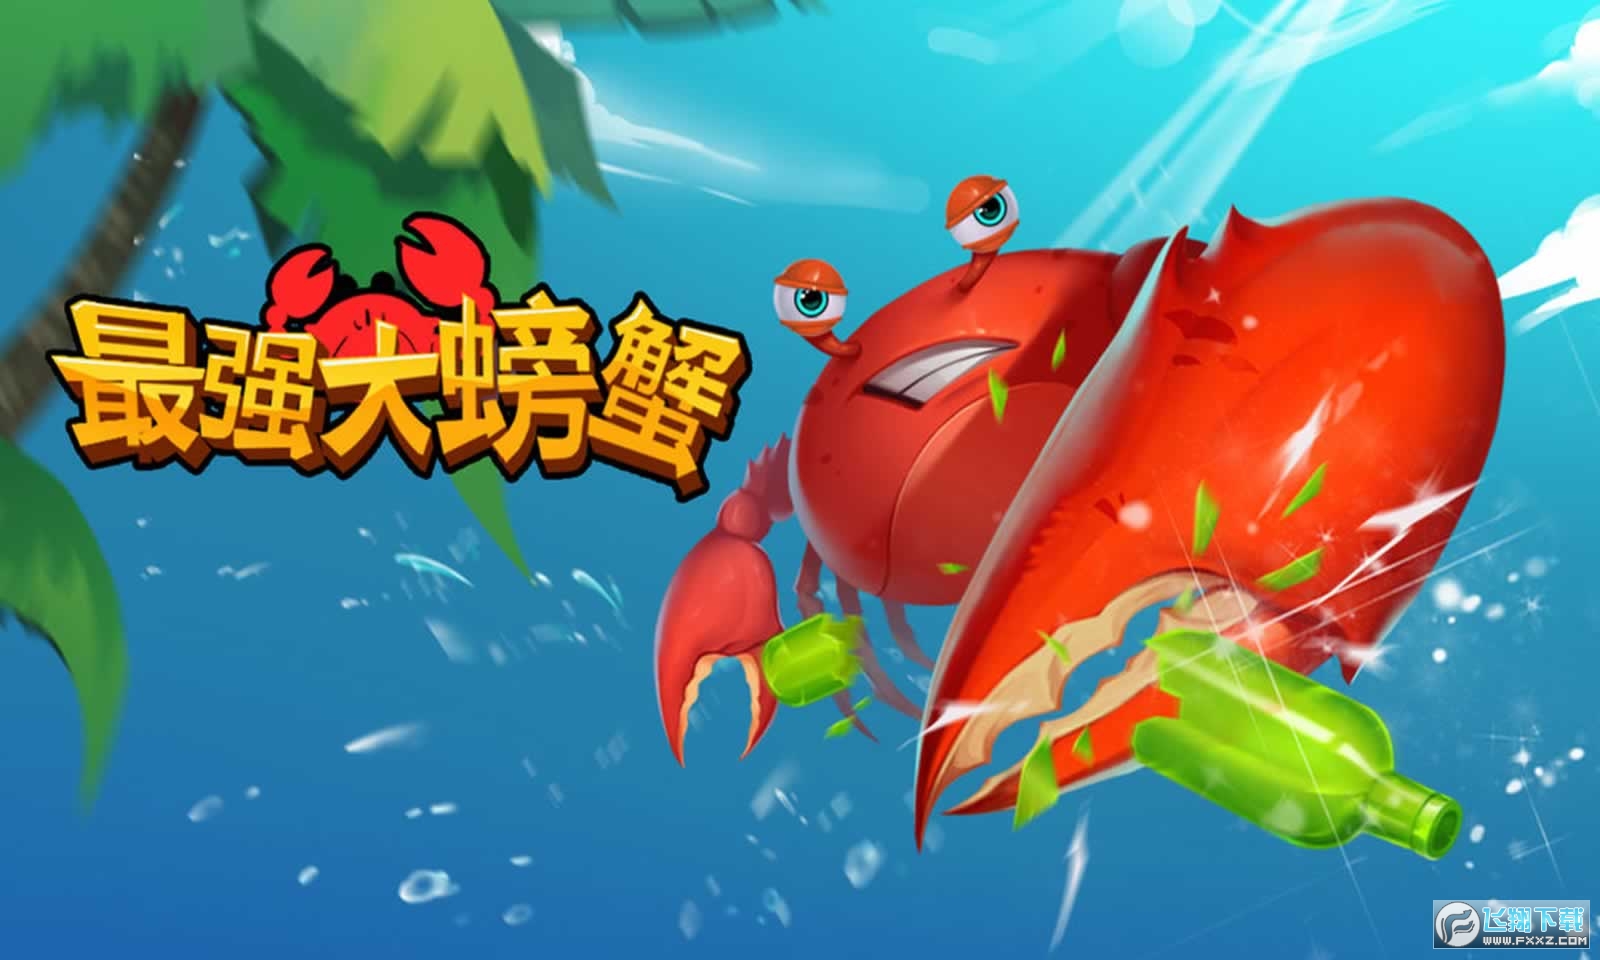 螃蟹游戏盒子_斗蟹游戏盒子_盒子游戏盒